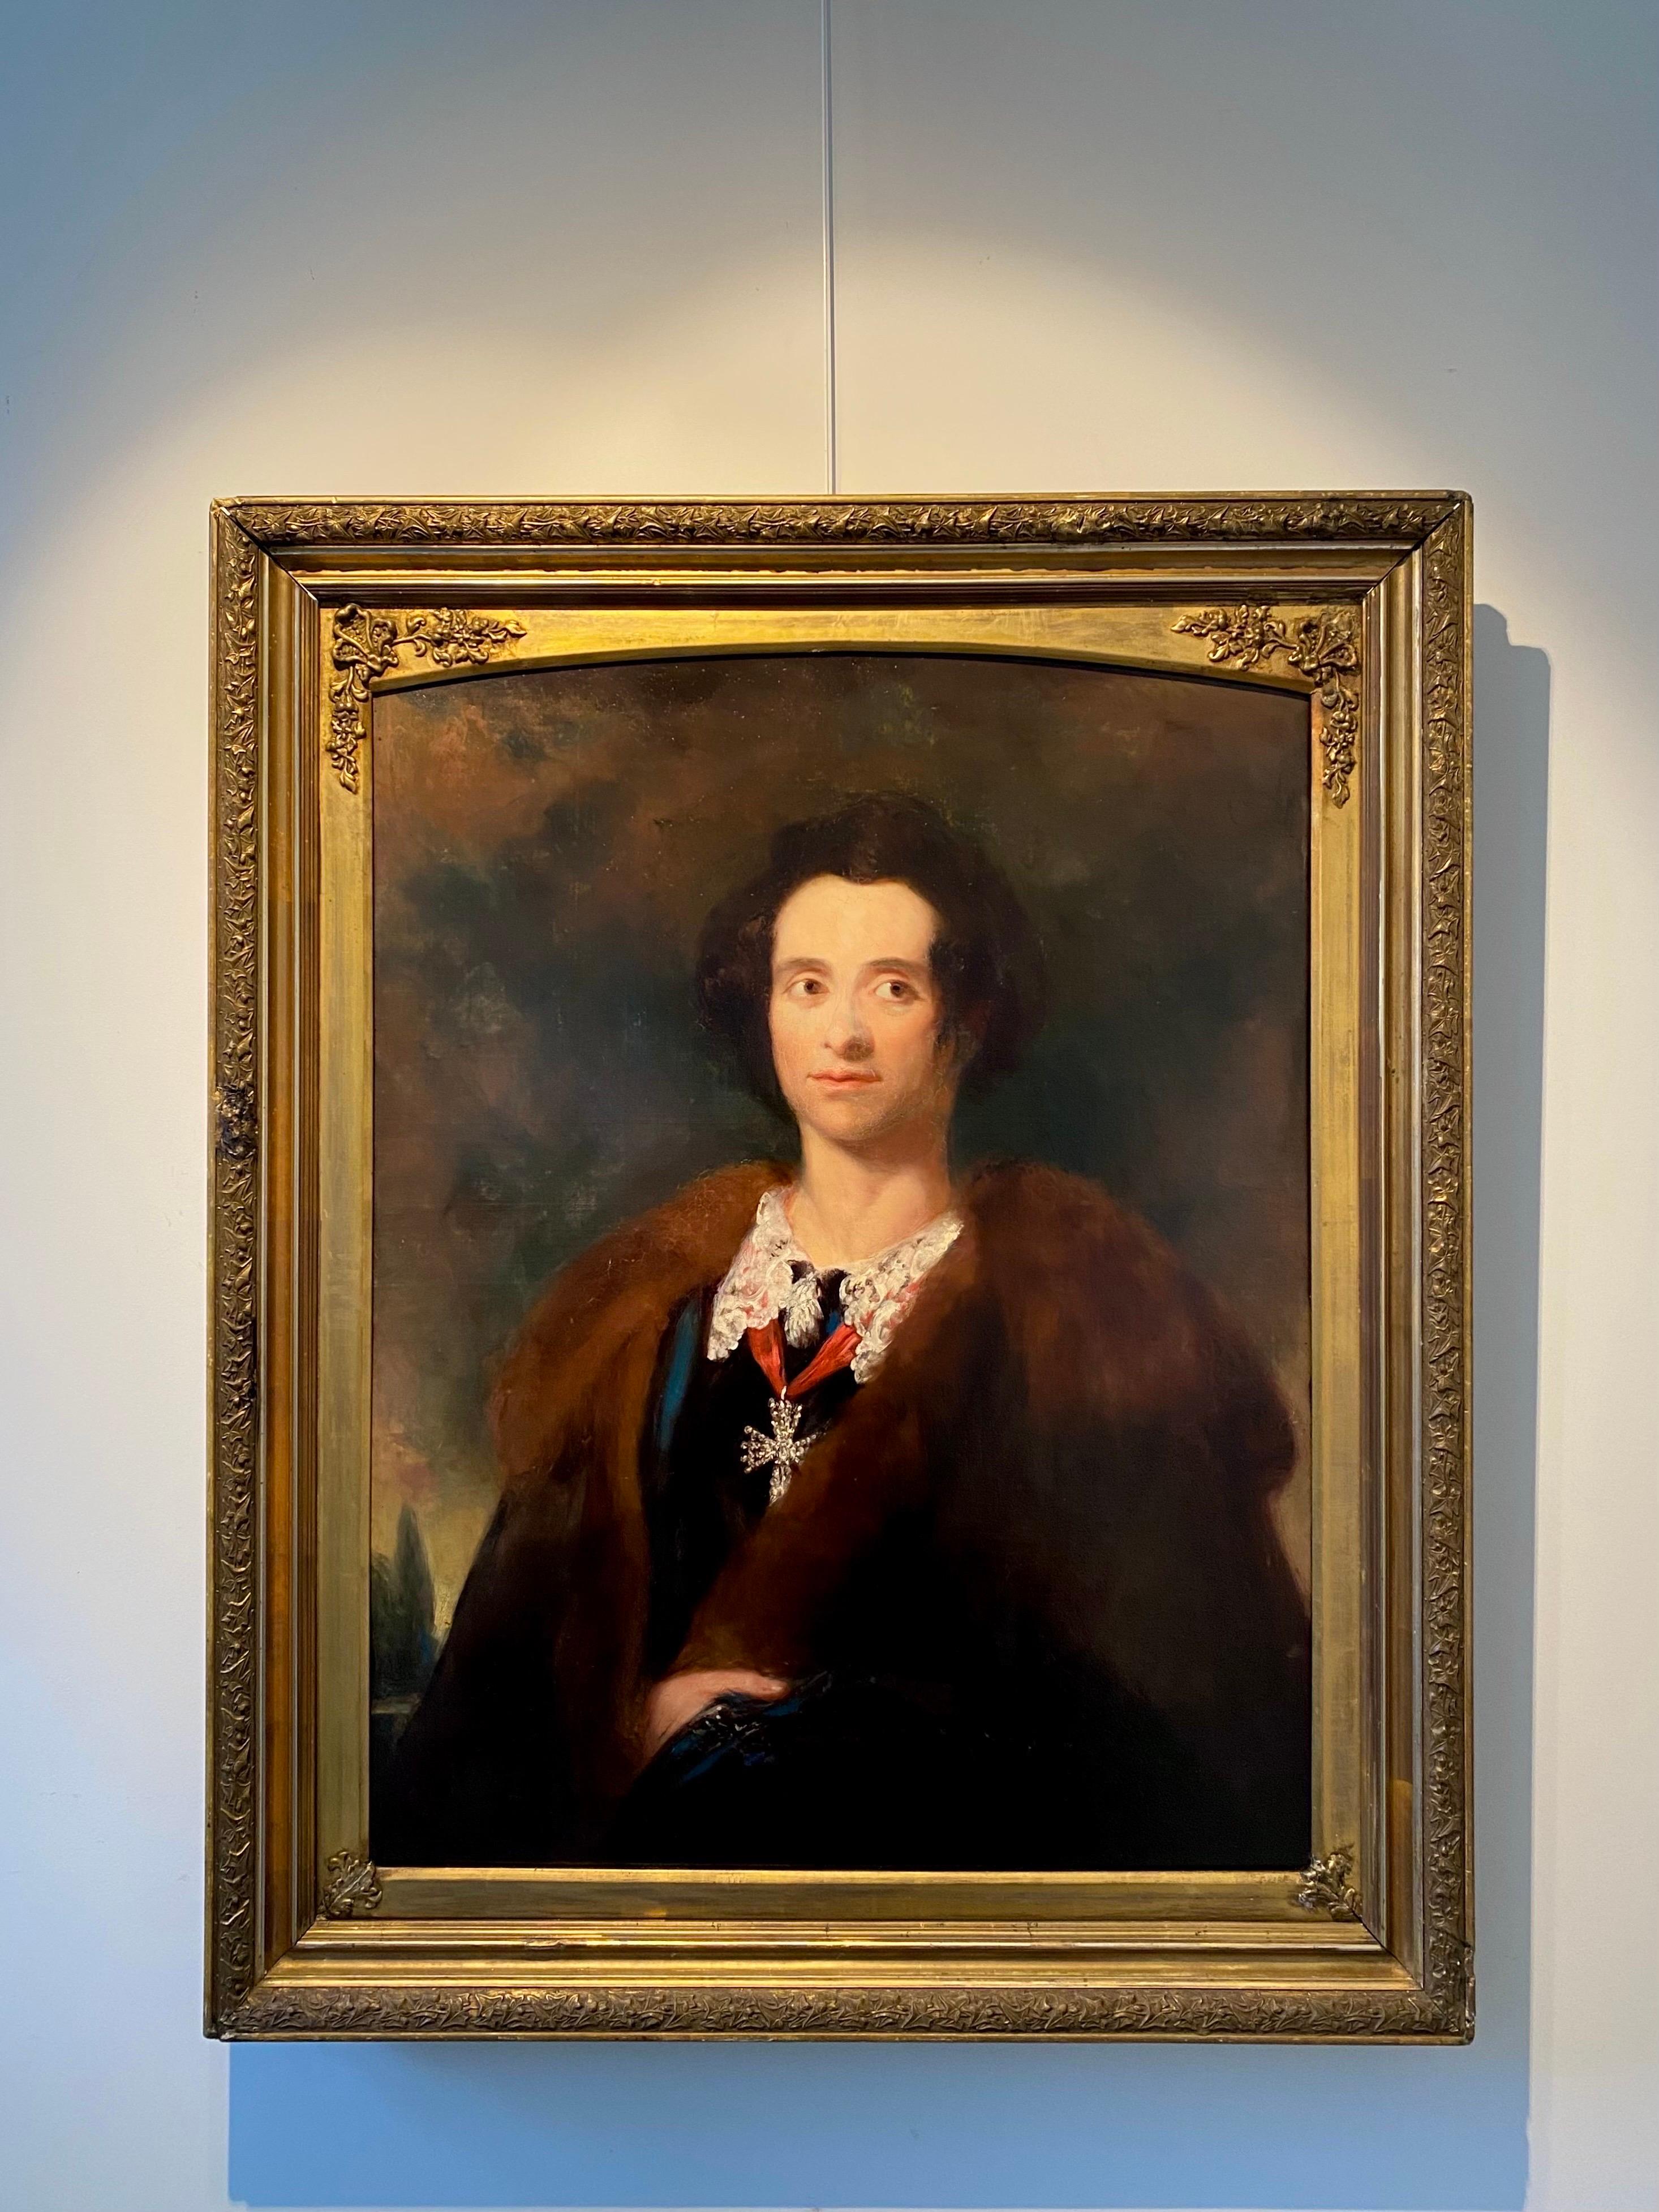 Portrait britannique victorien du 19ème siècle d'un homme noble - Anglais - Maîtres anciens Painting par (Circle of) Joshua Reynolds